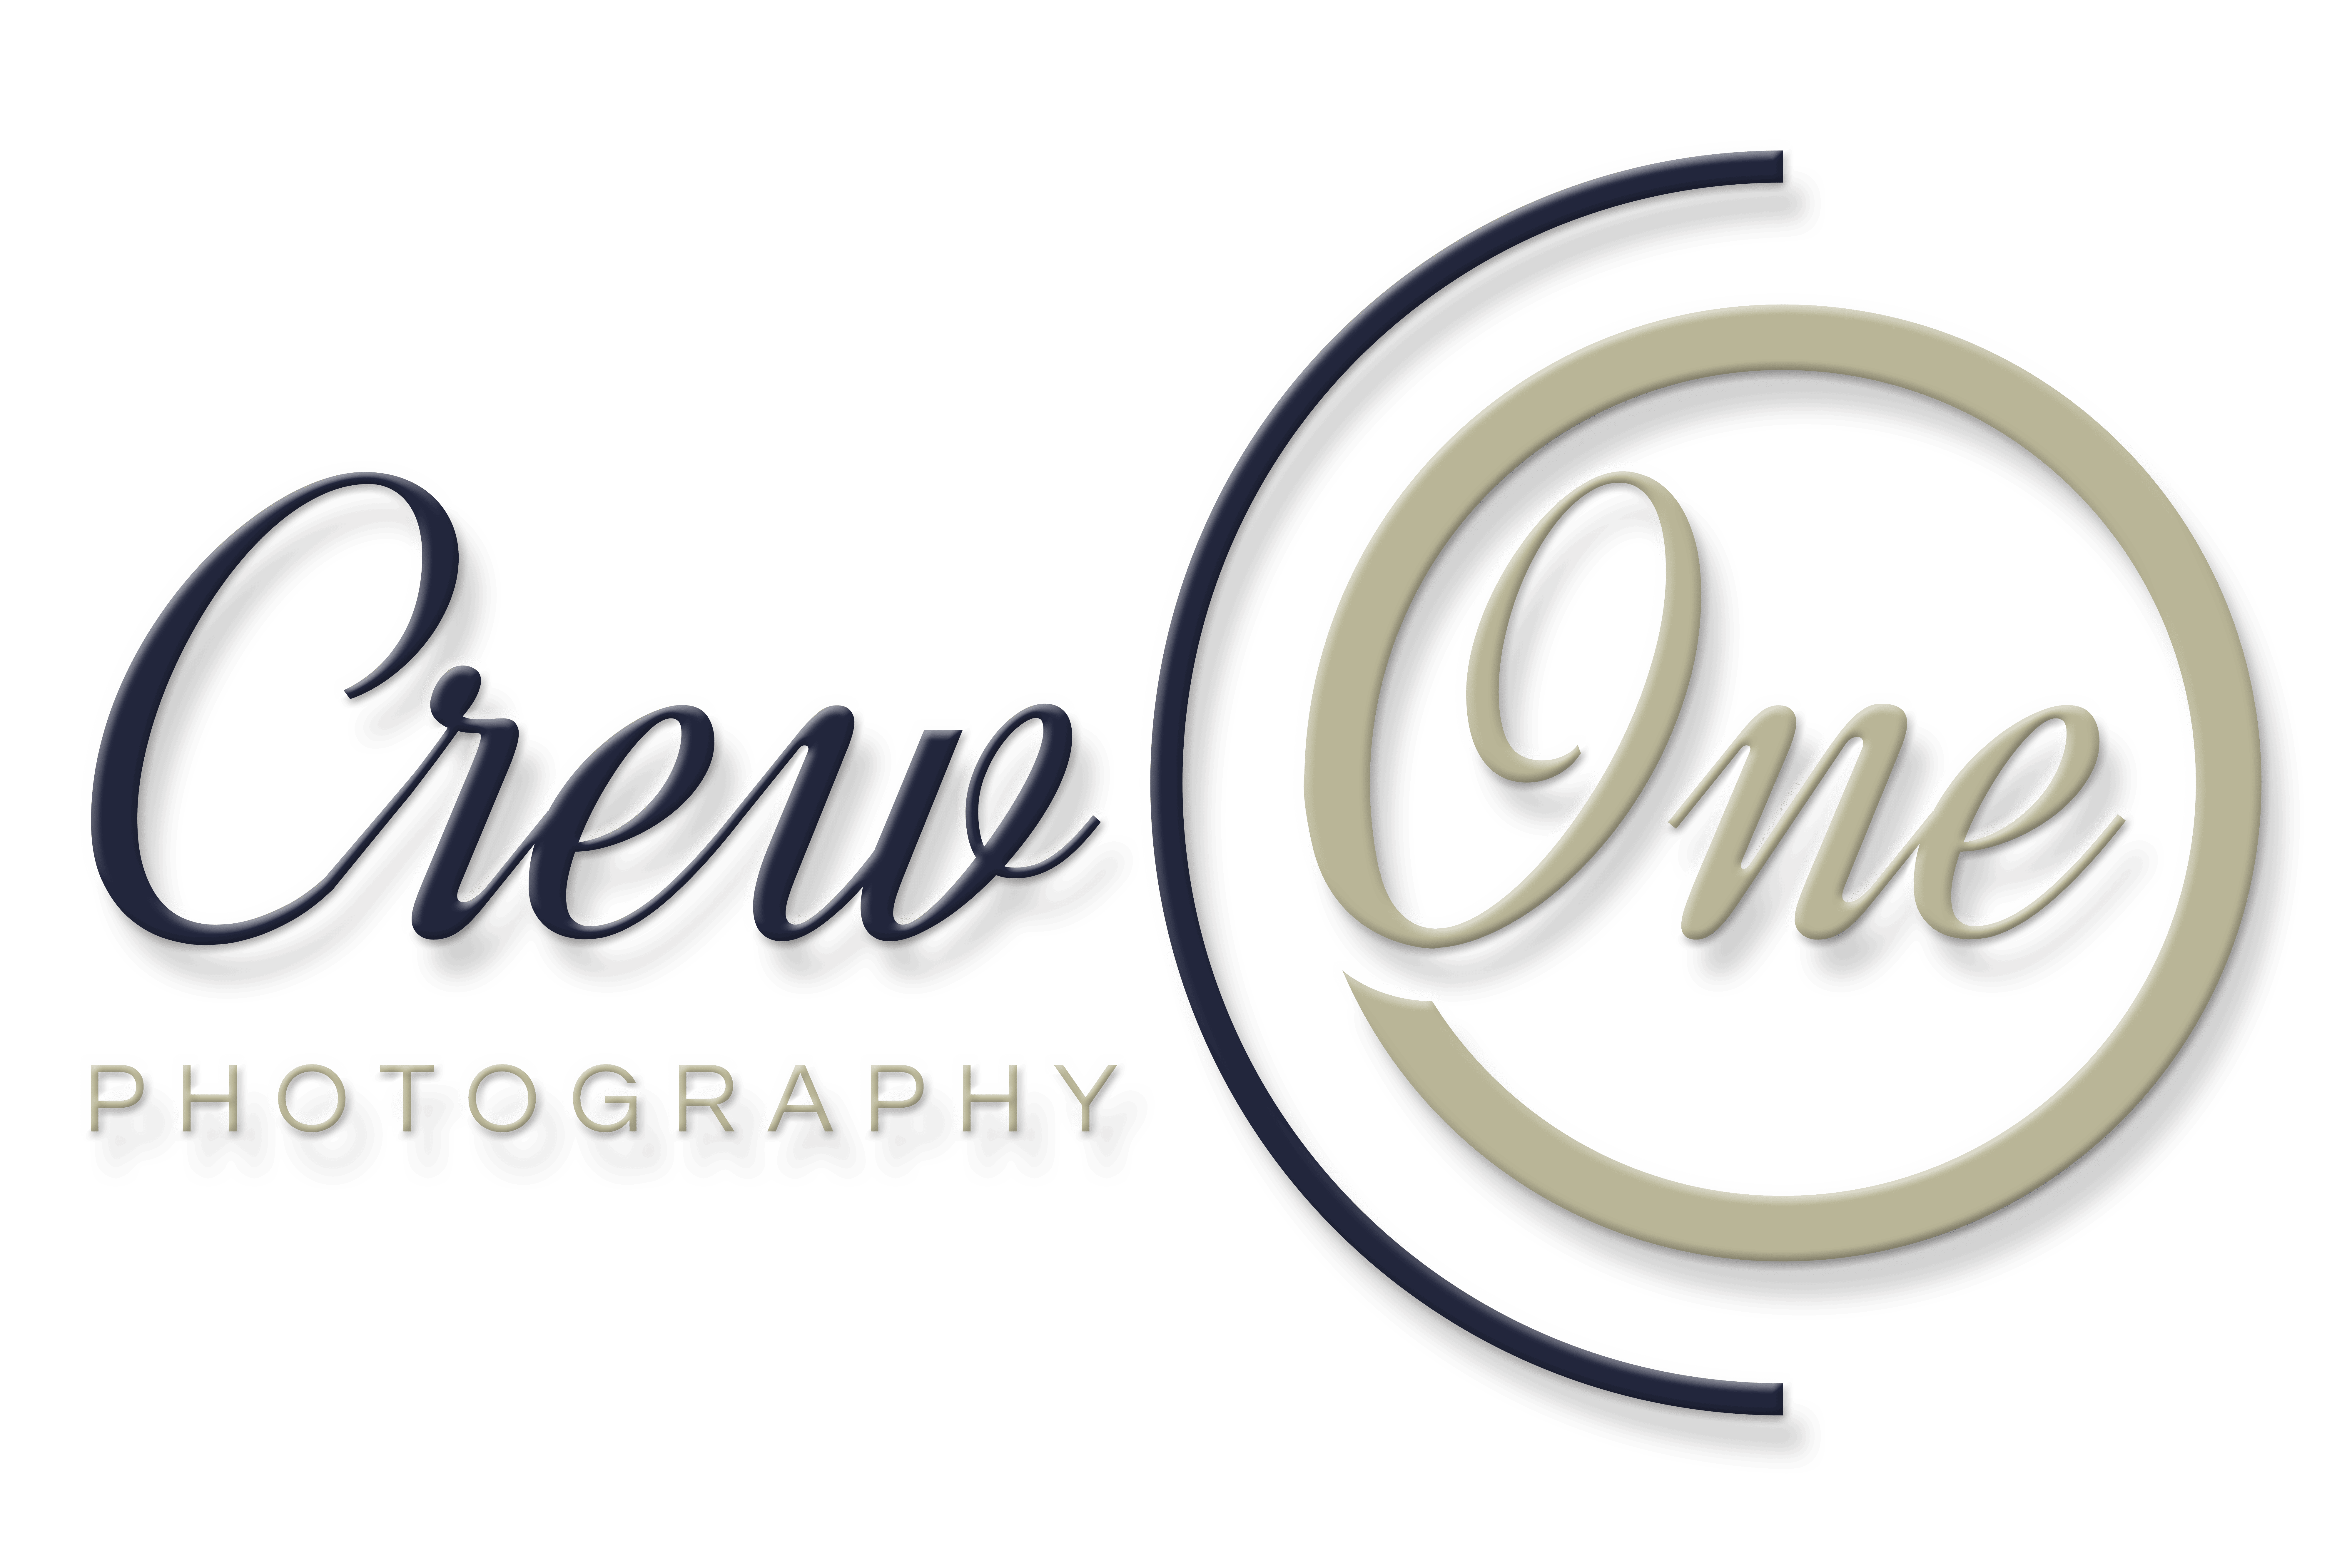 Crew One Photography